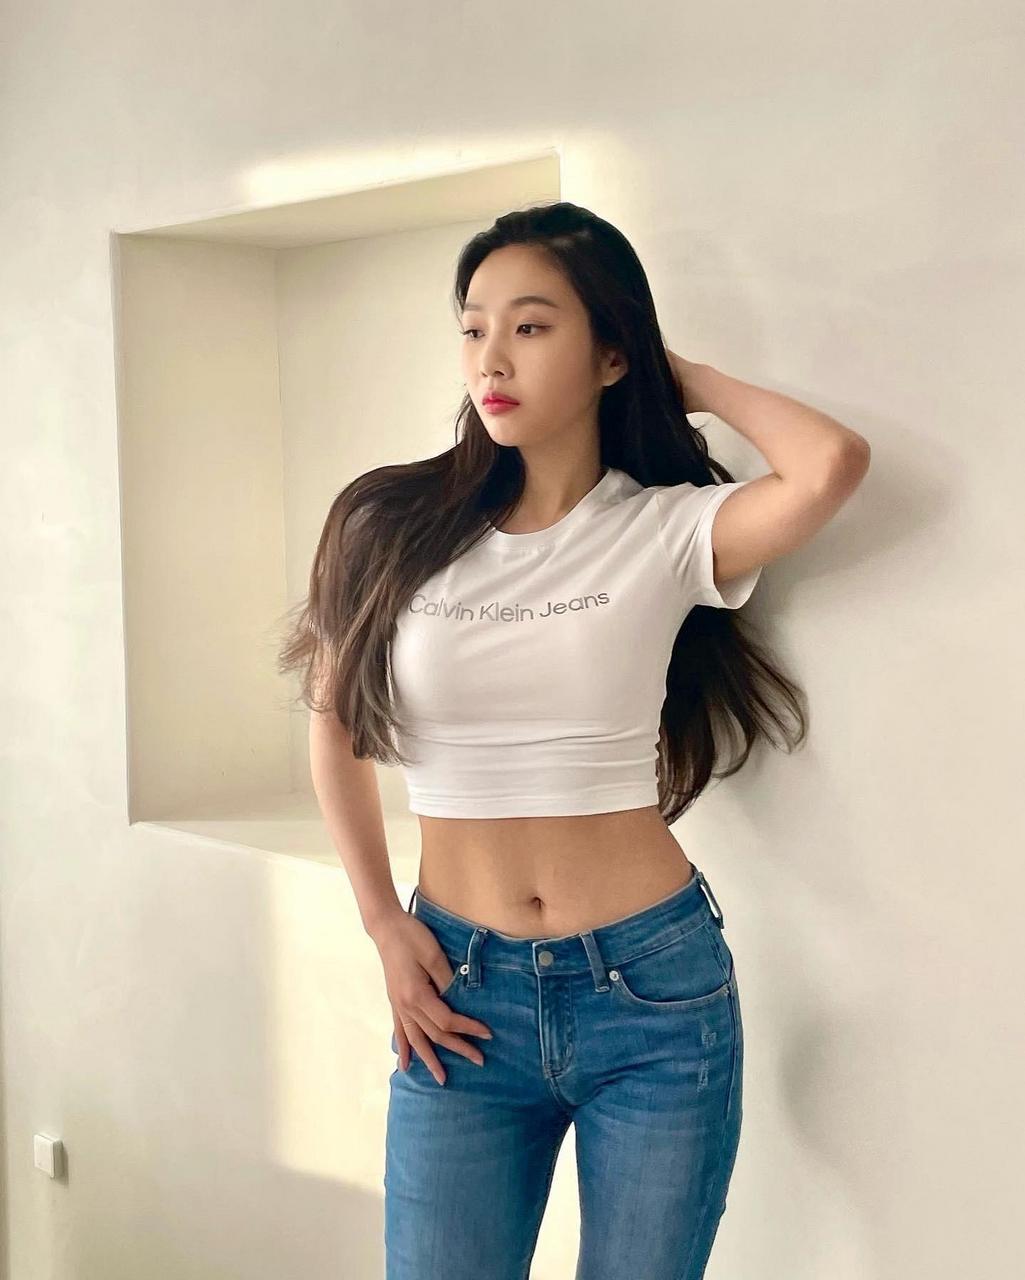 Joy From Red Velvet Kpop Looks So Tight In That Shirt NSFW